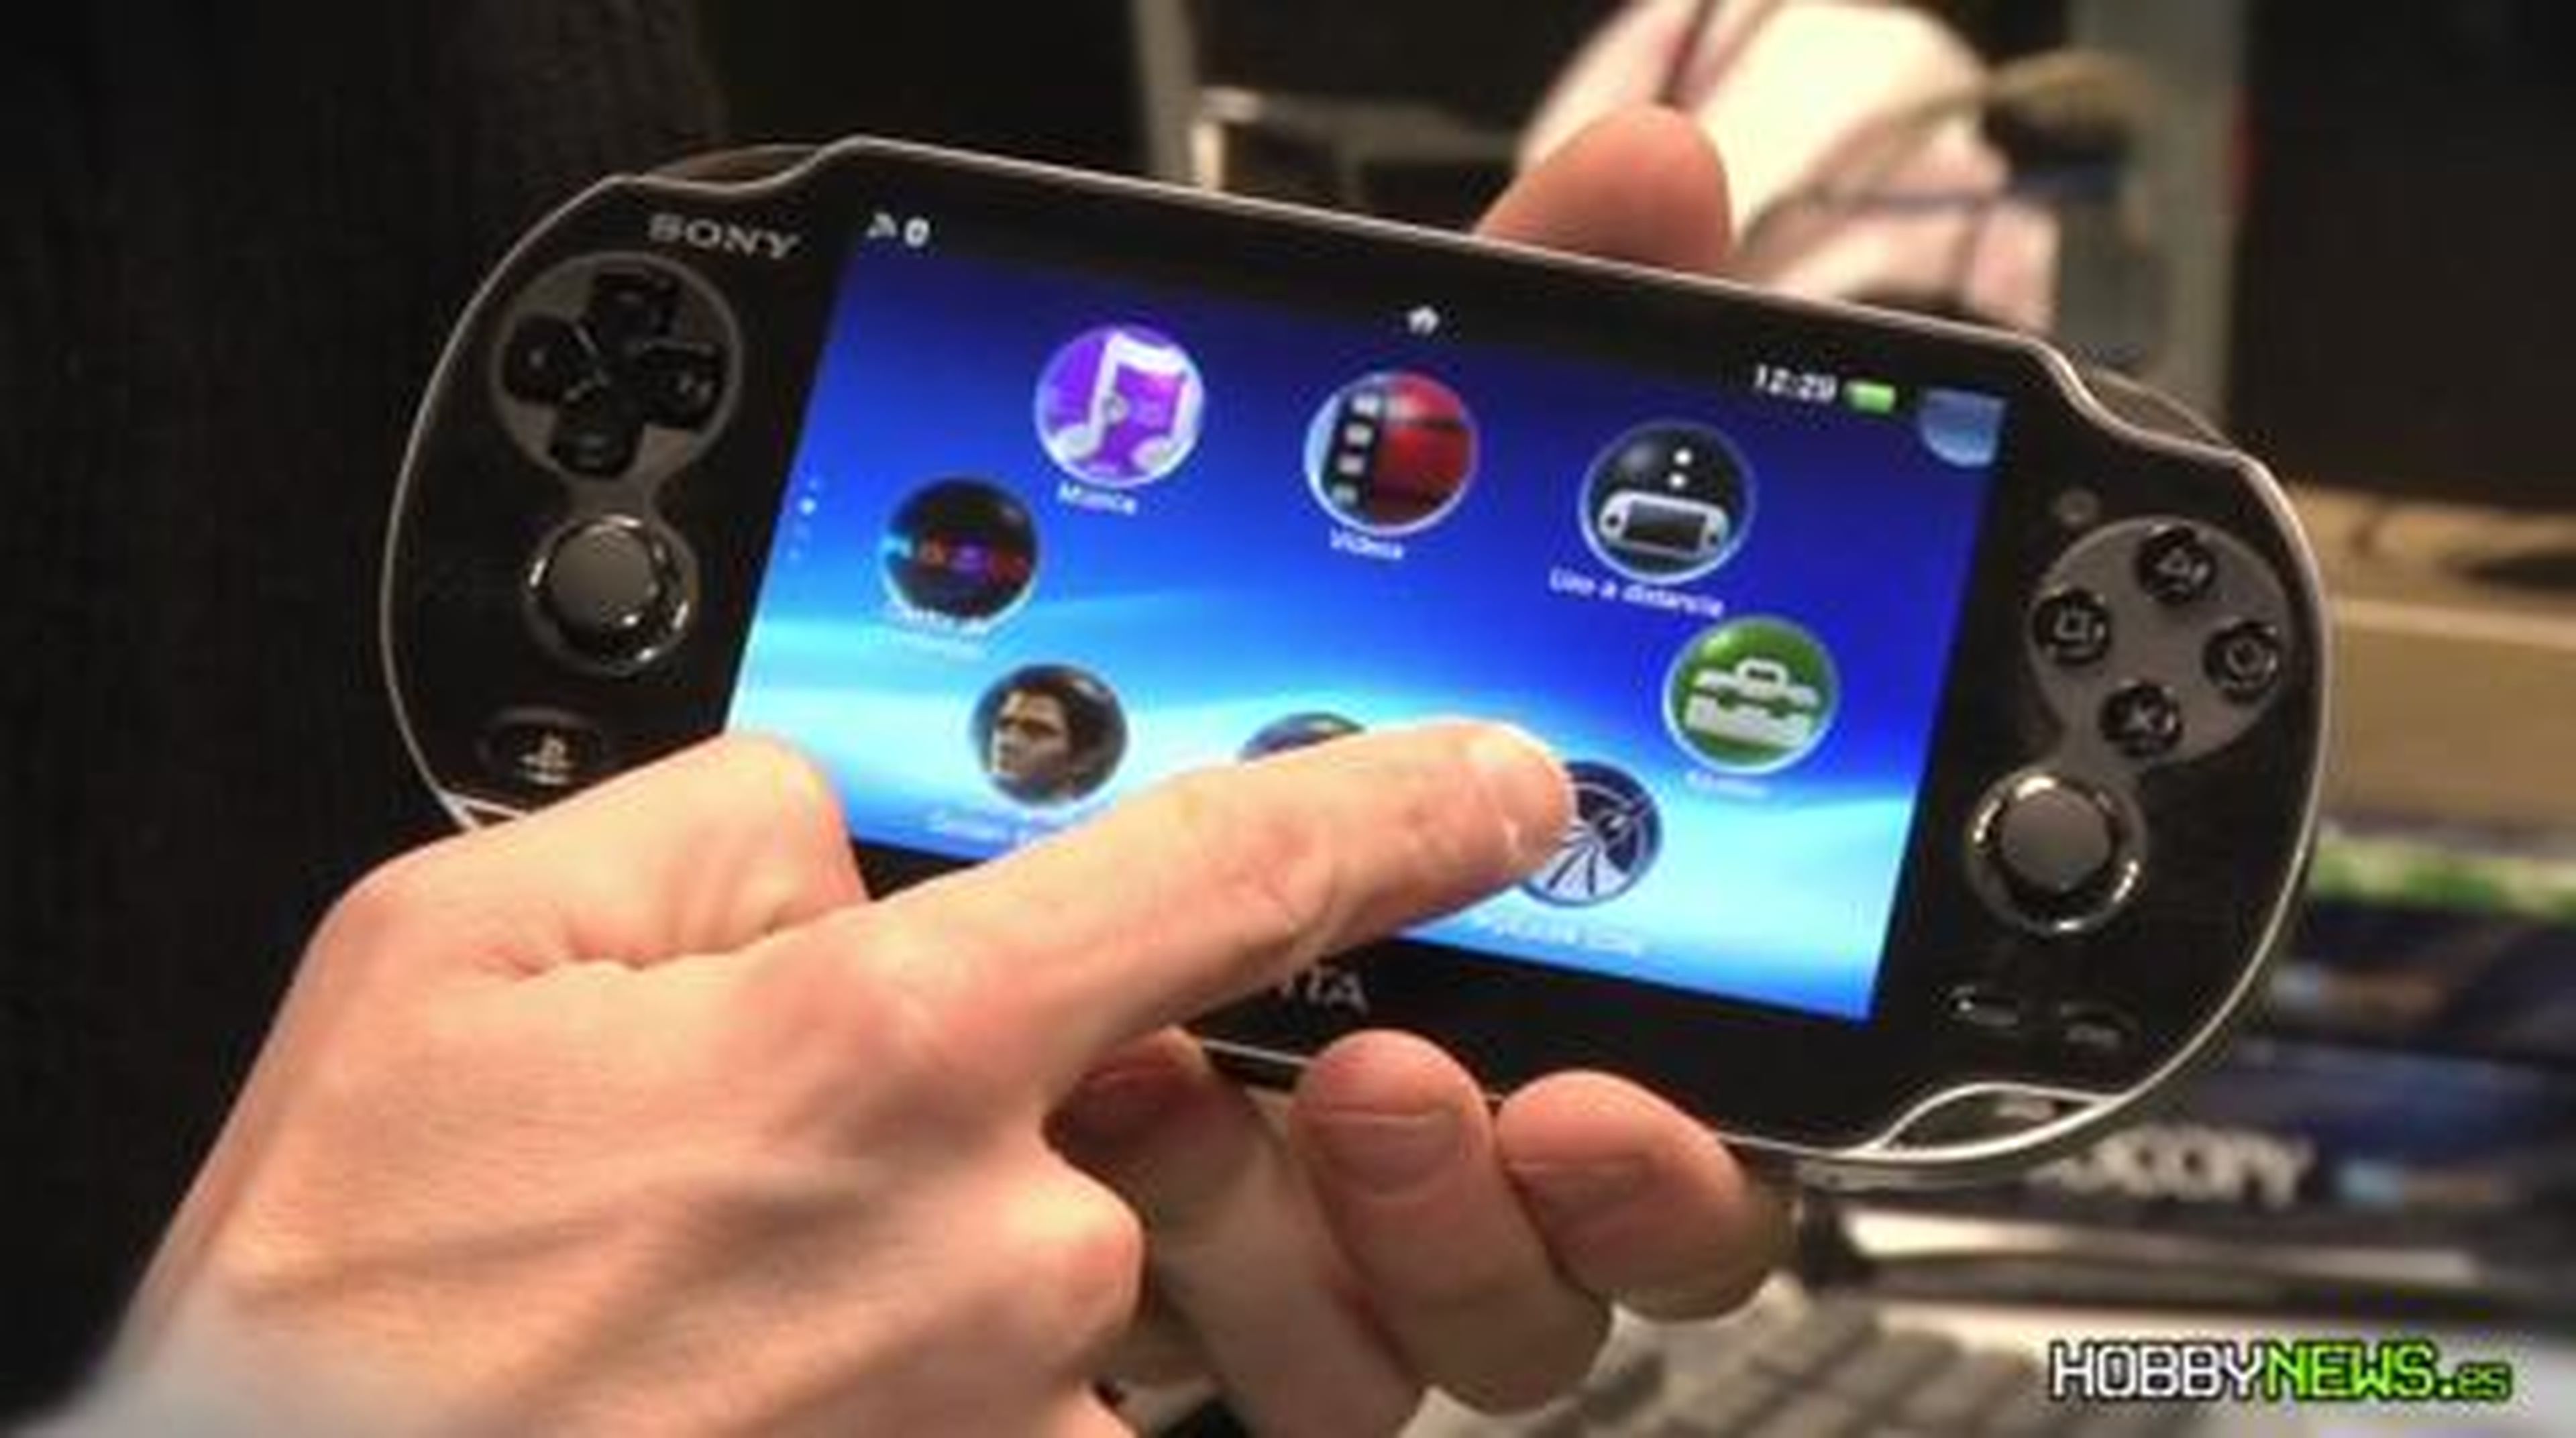 PS Vita (HD) Almacenar los juegos en HobbyNews.es